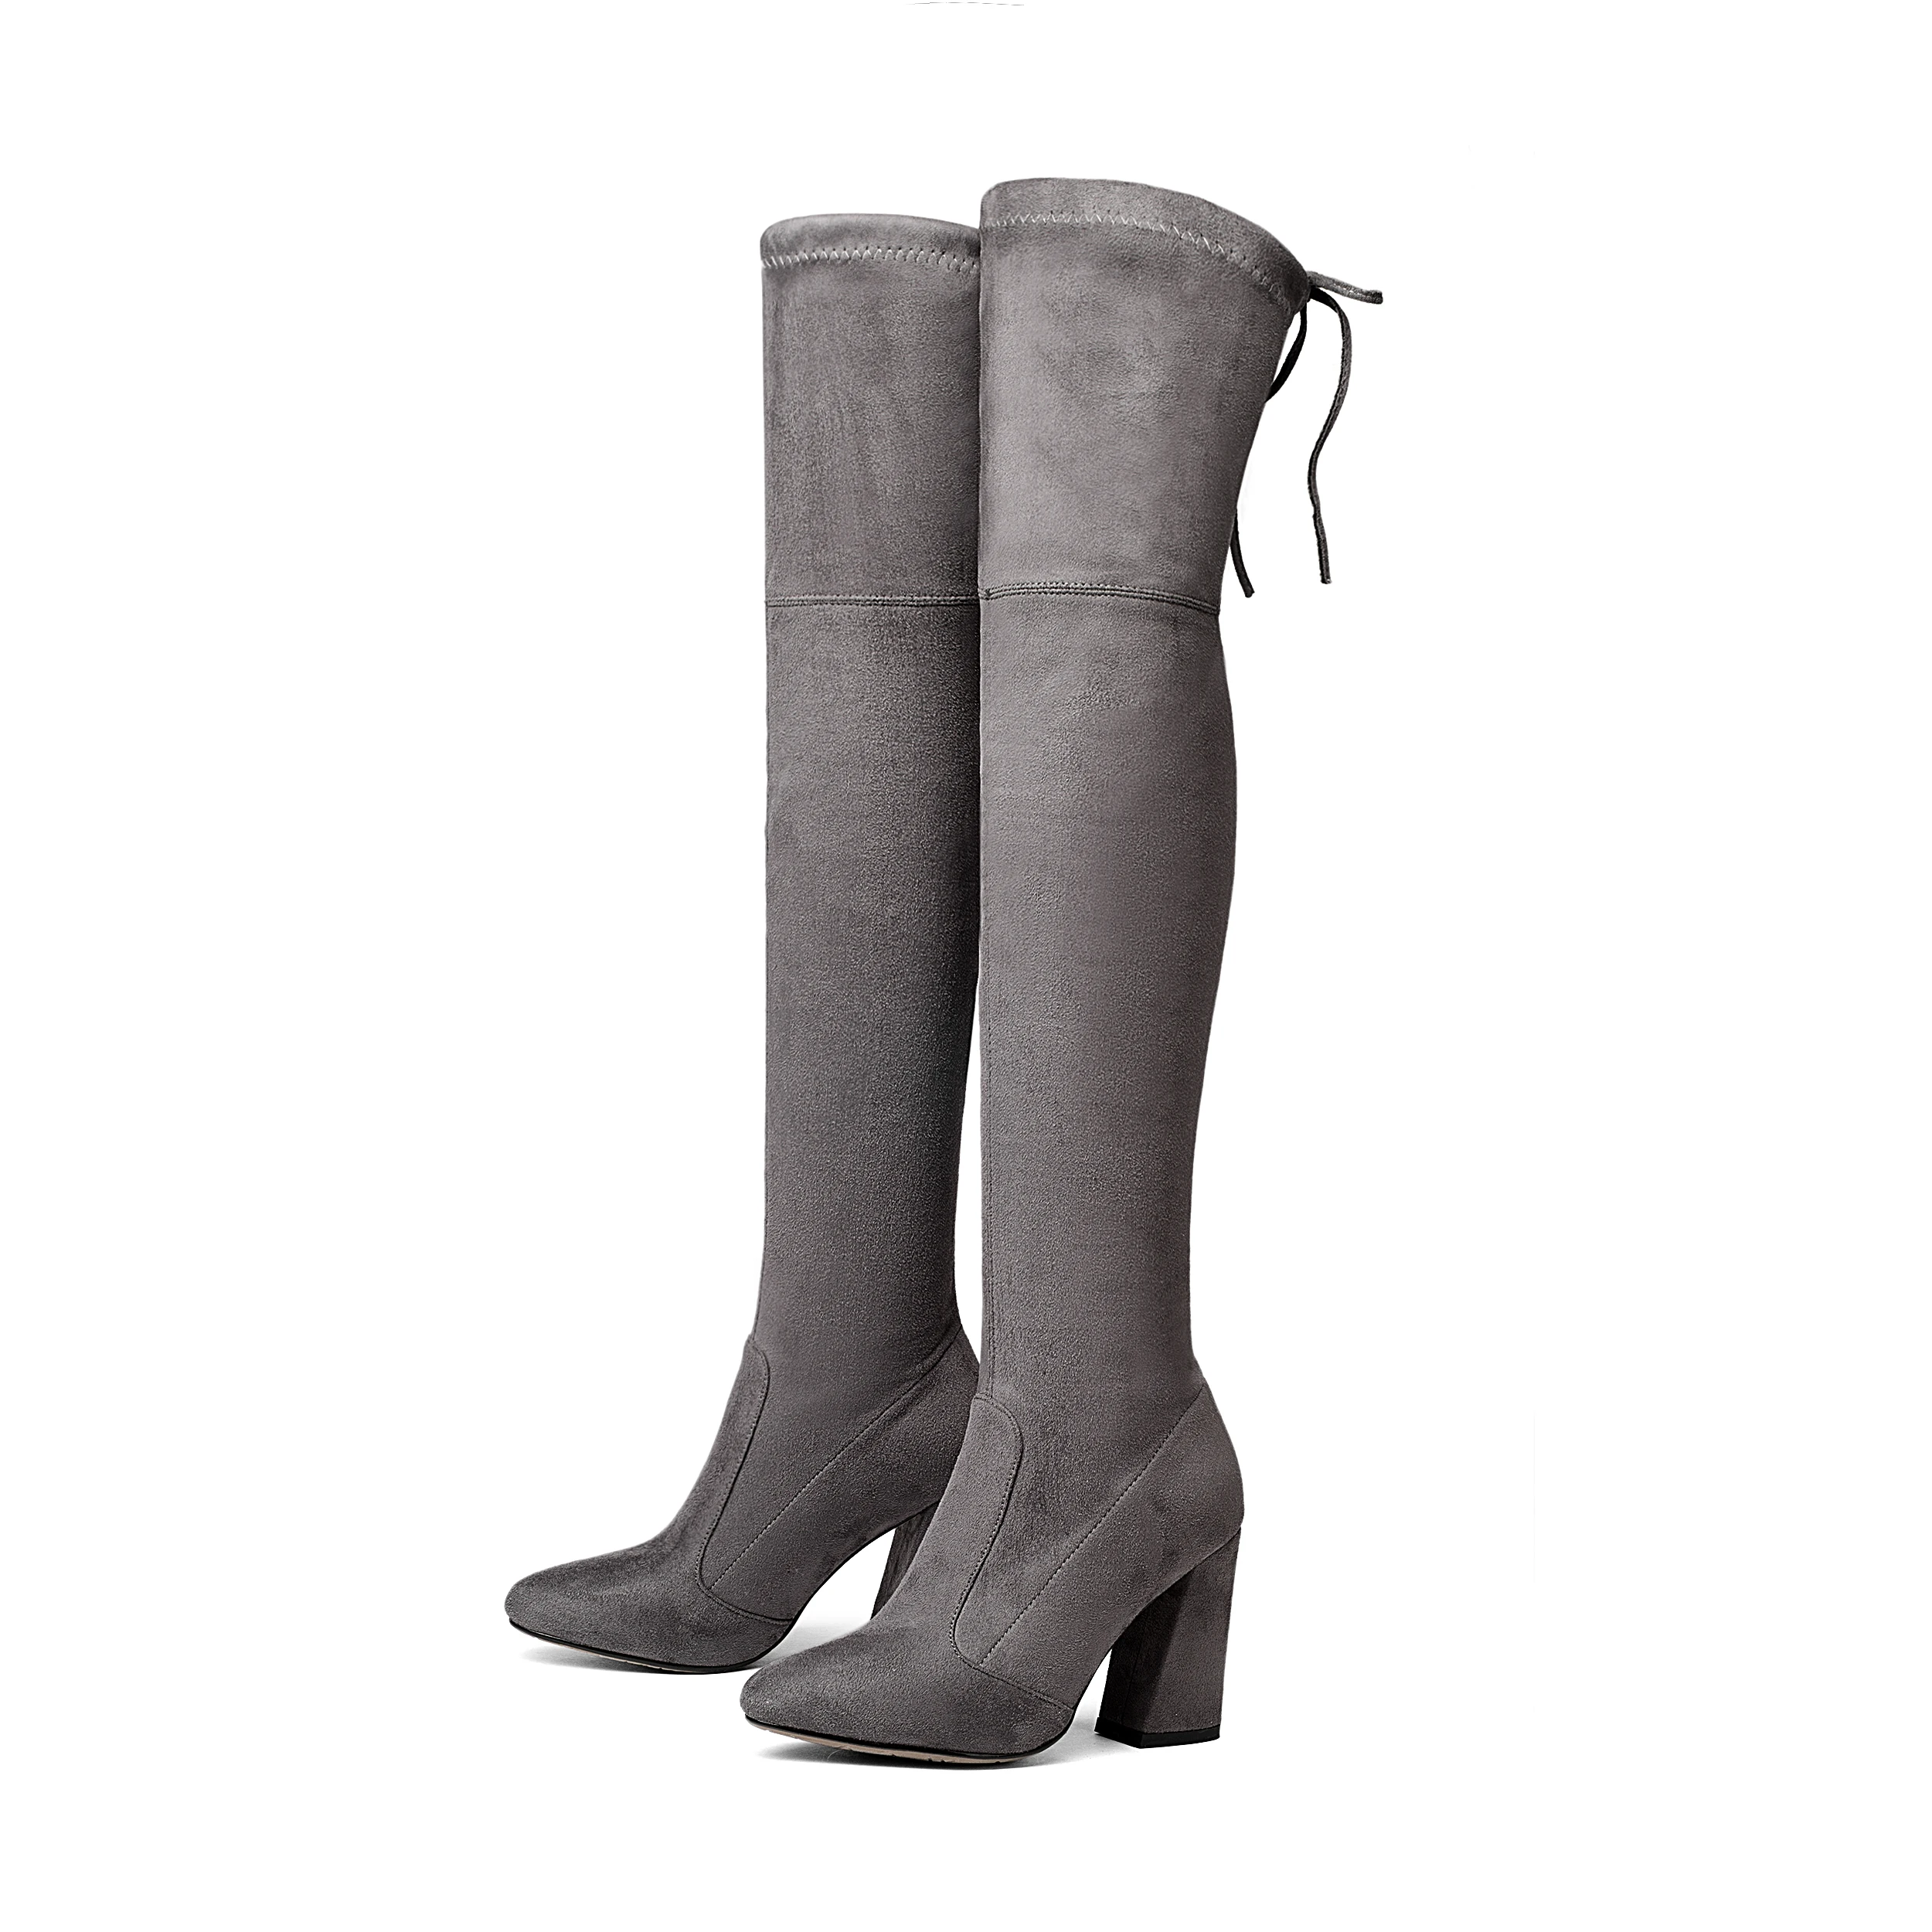 NEMAONE/женские эластичные замшевые ботфорты выше колена; сапоги до бедра; пикантная модная обувь на высоком каблуке размера плюс; женская обувь; коллекция года; Цвет черный, коричневый - Цвет: Темно-серый